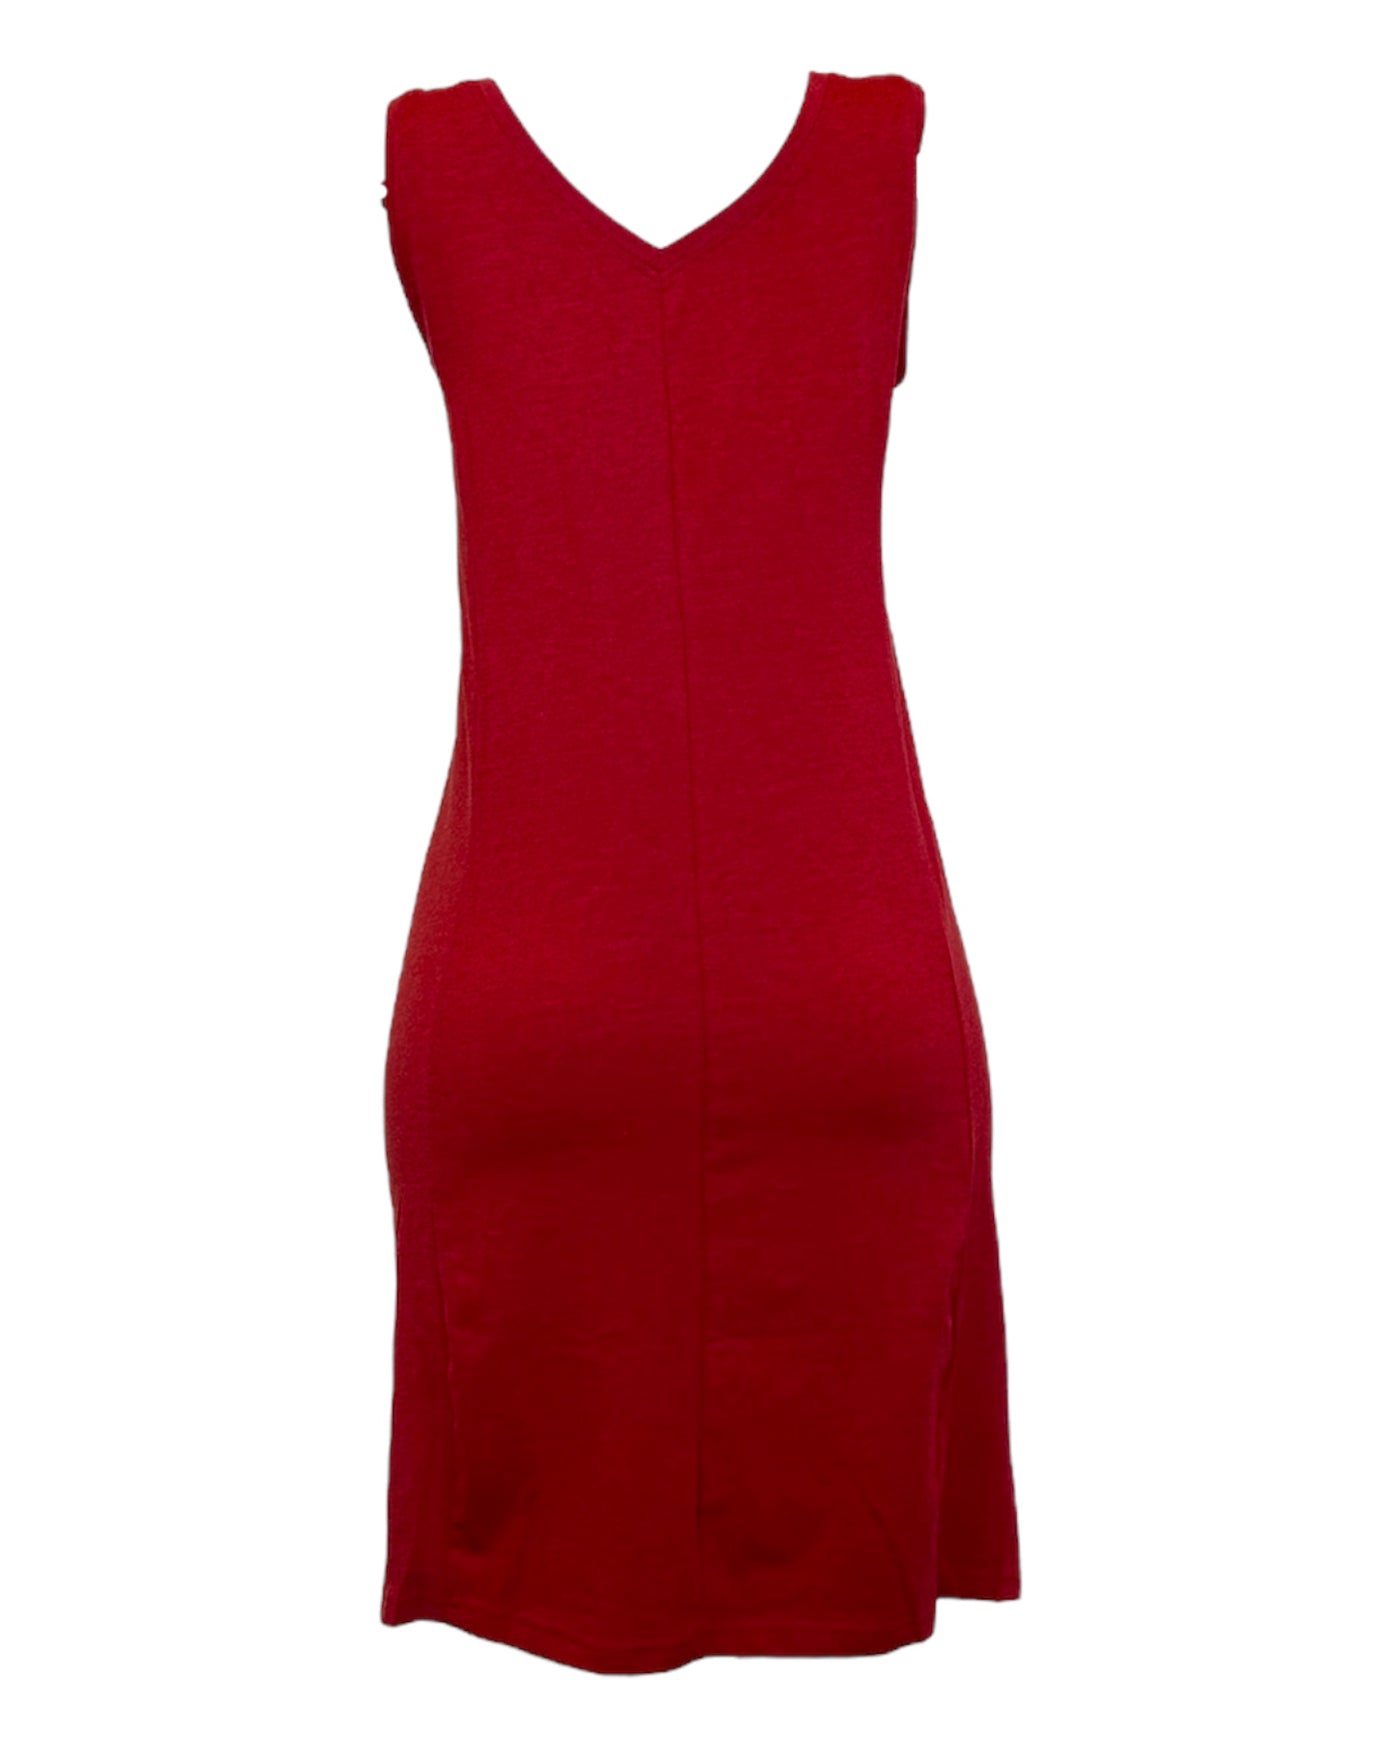 Jolie robe rouge d'été pour femme sans manche en coton biologique